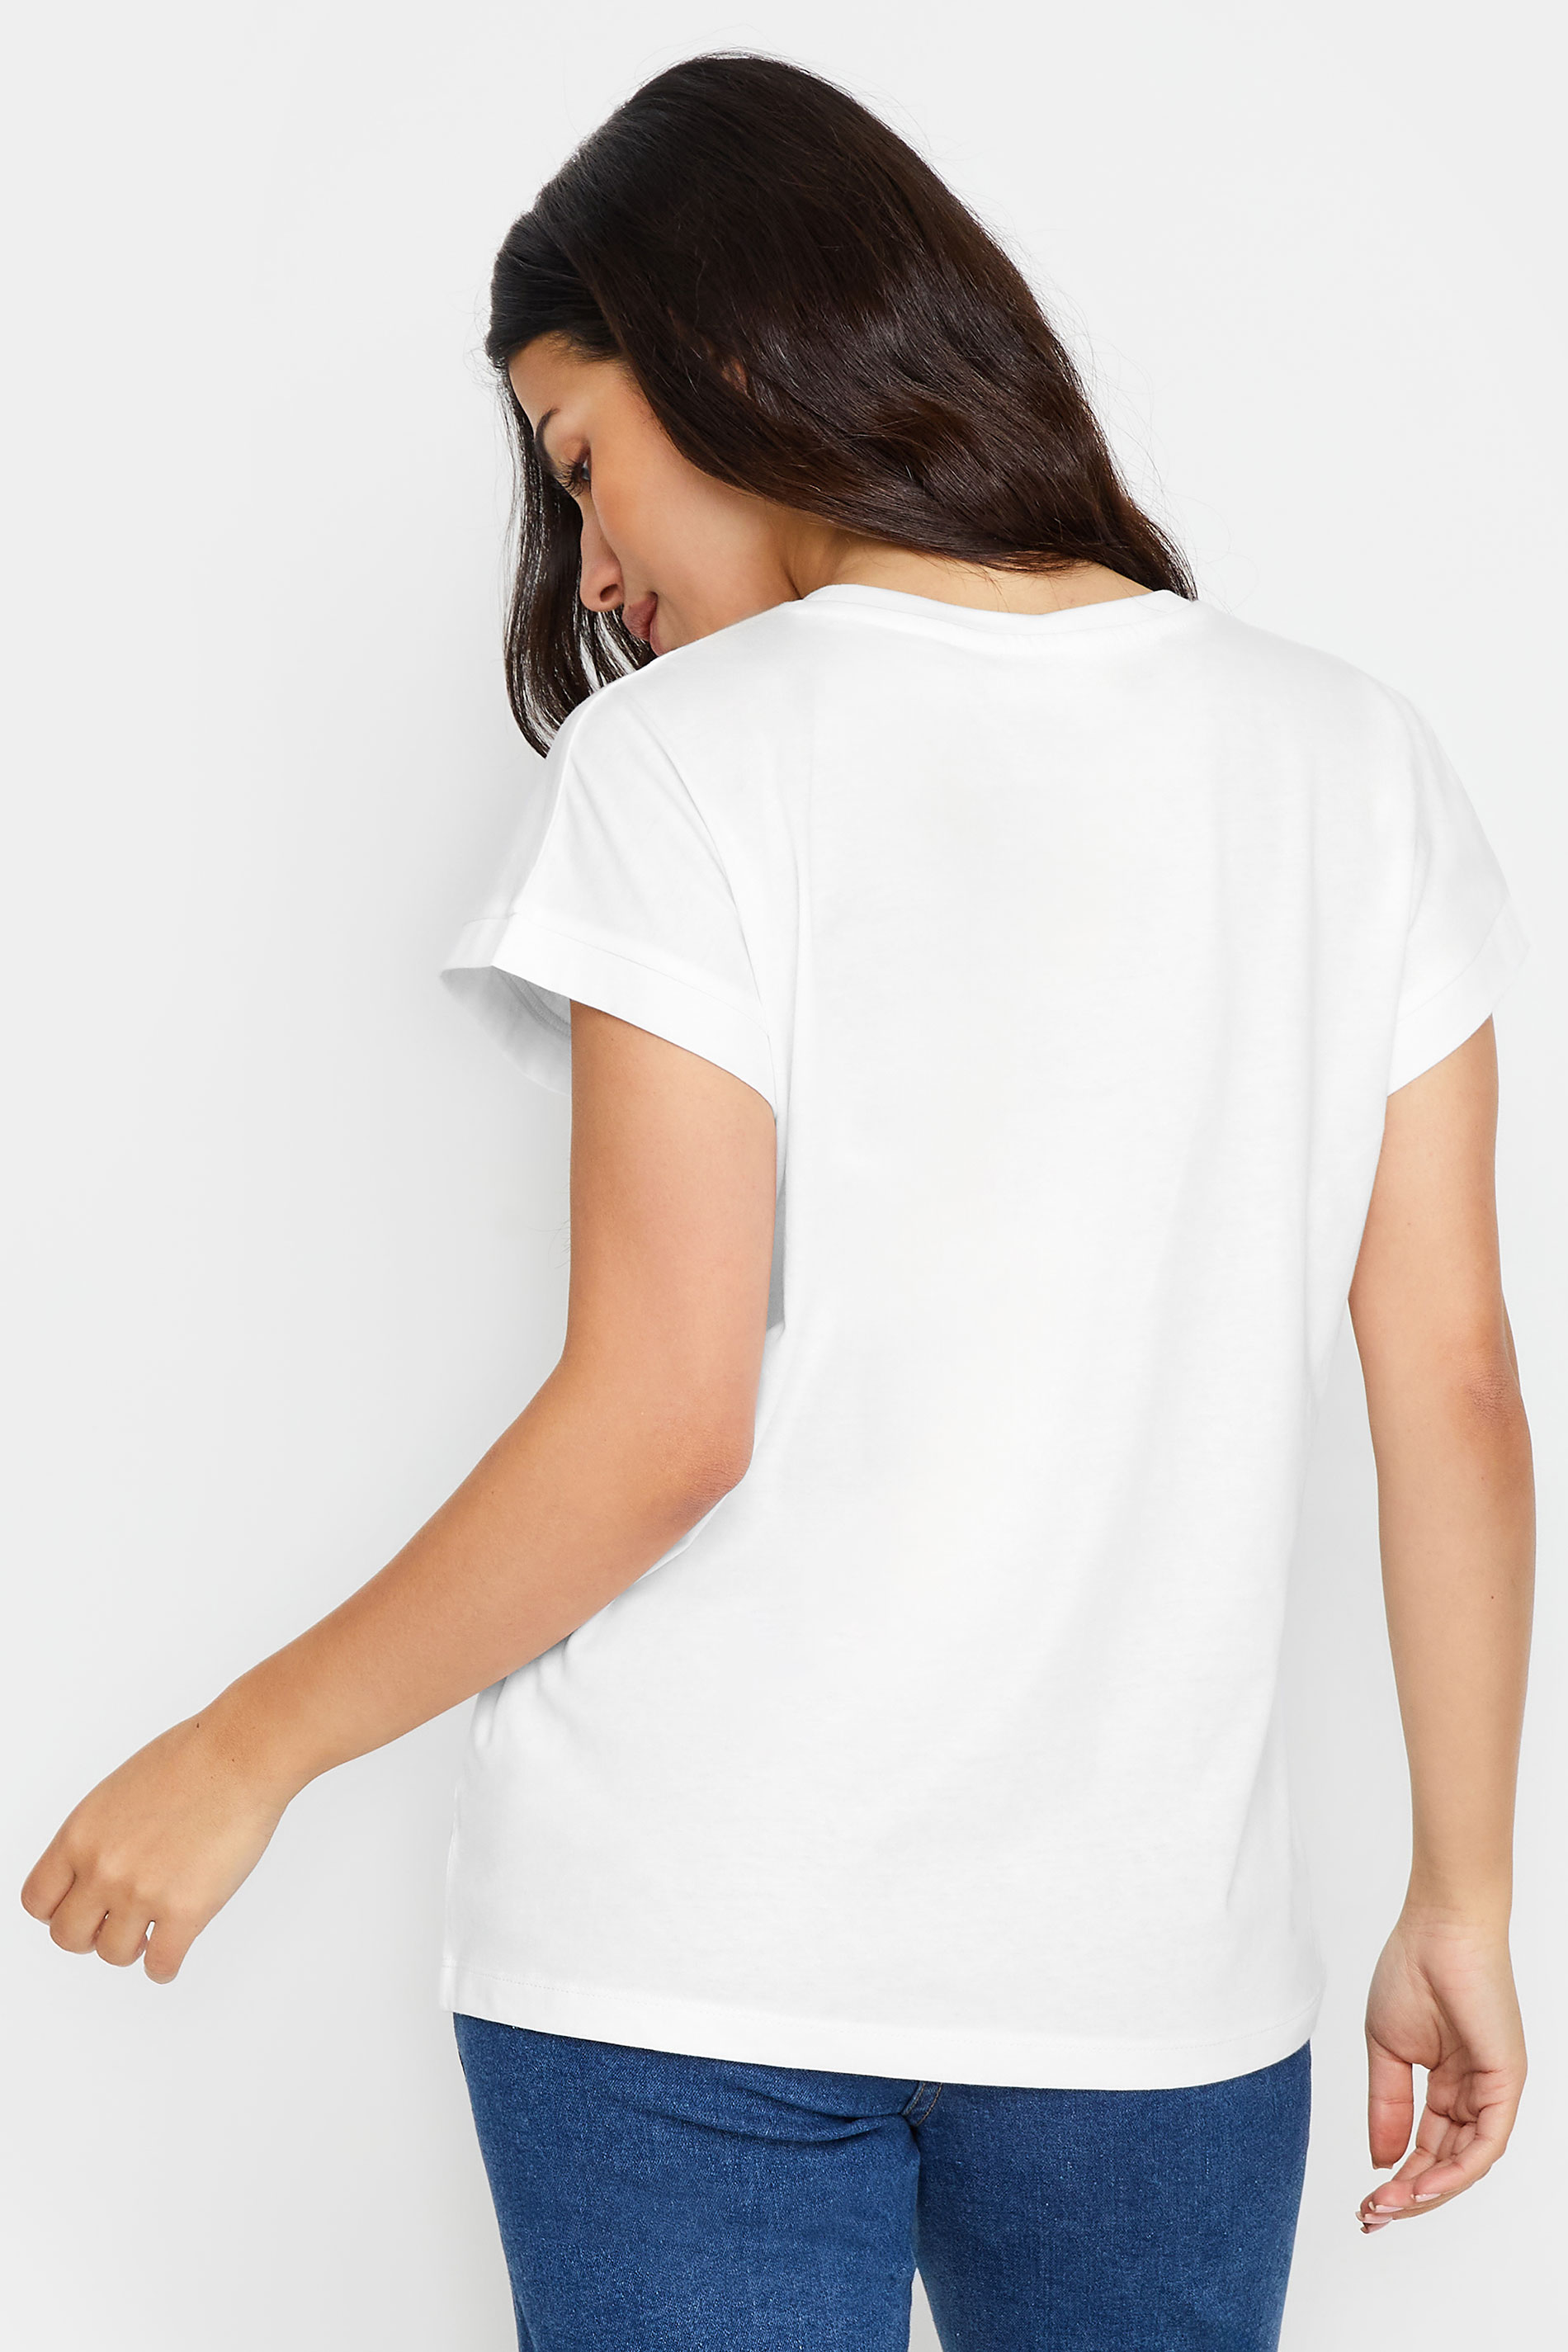 PixieGirl Petite Women's White 'San Francisco' Slogan Short Sleeve T-Shirt | PixieGirl 3